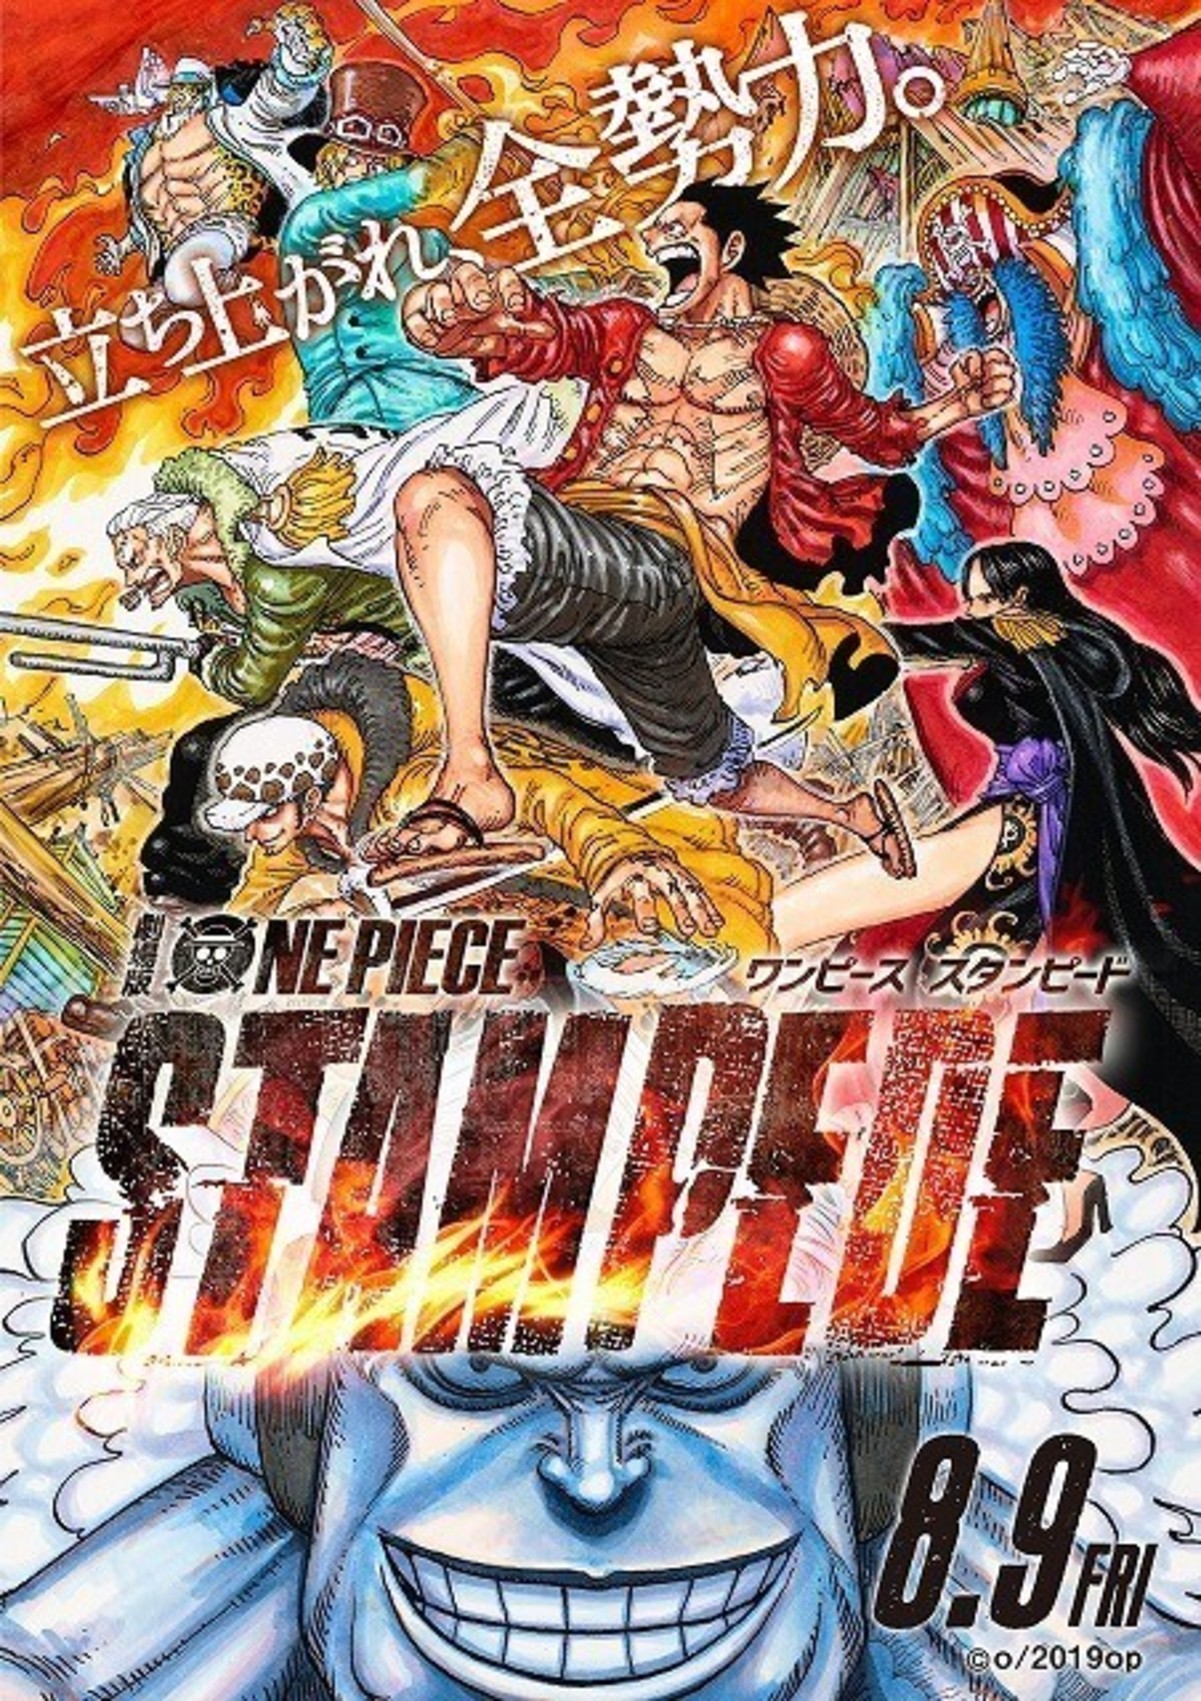 尾田栄一郎が描き下ろし One Piece Stampede ポスターで